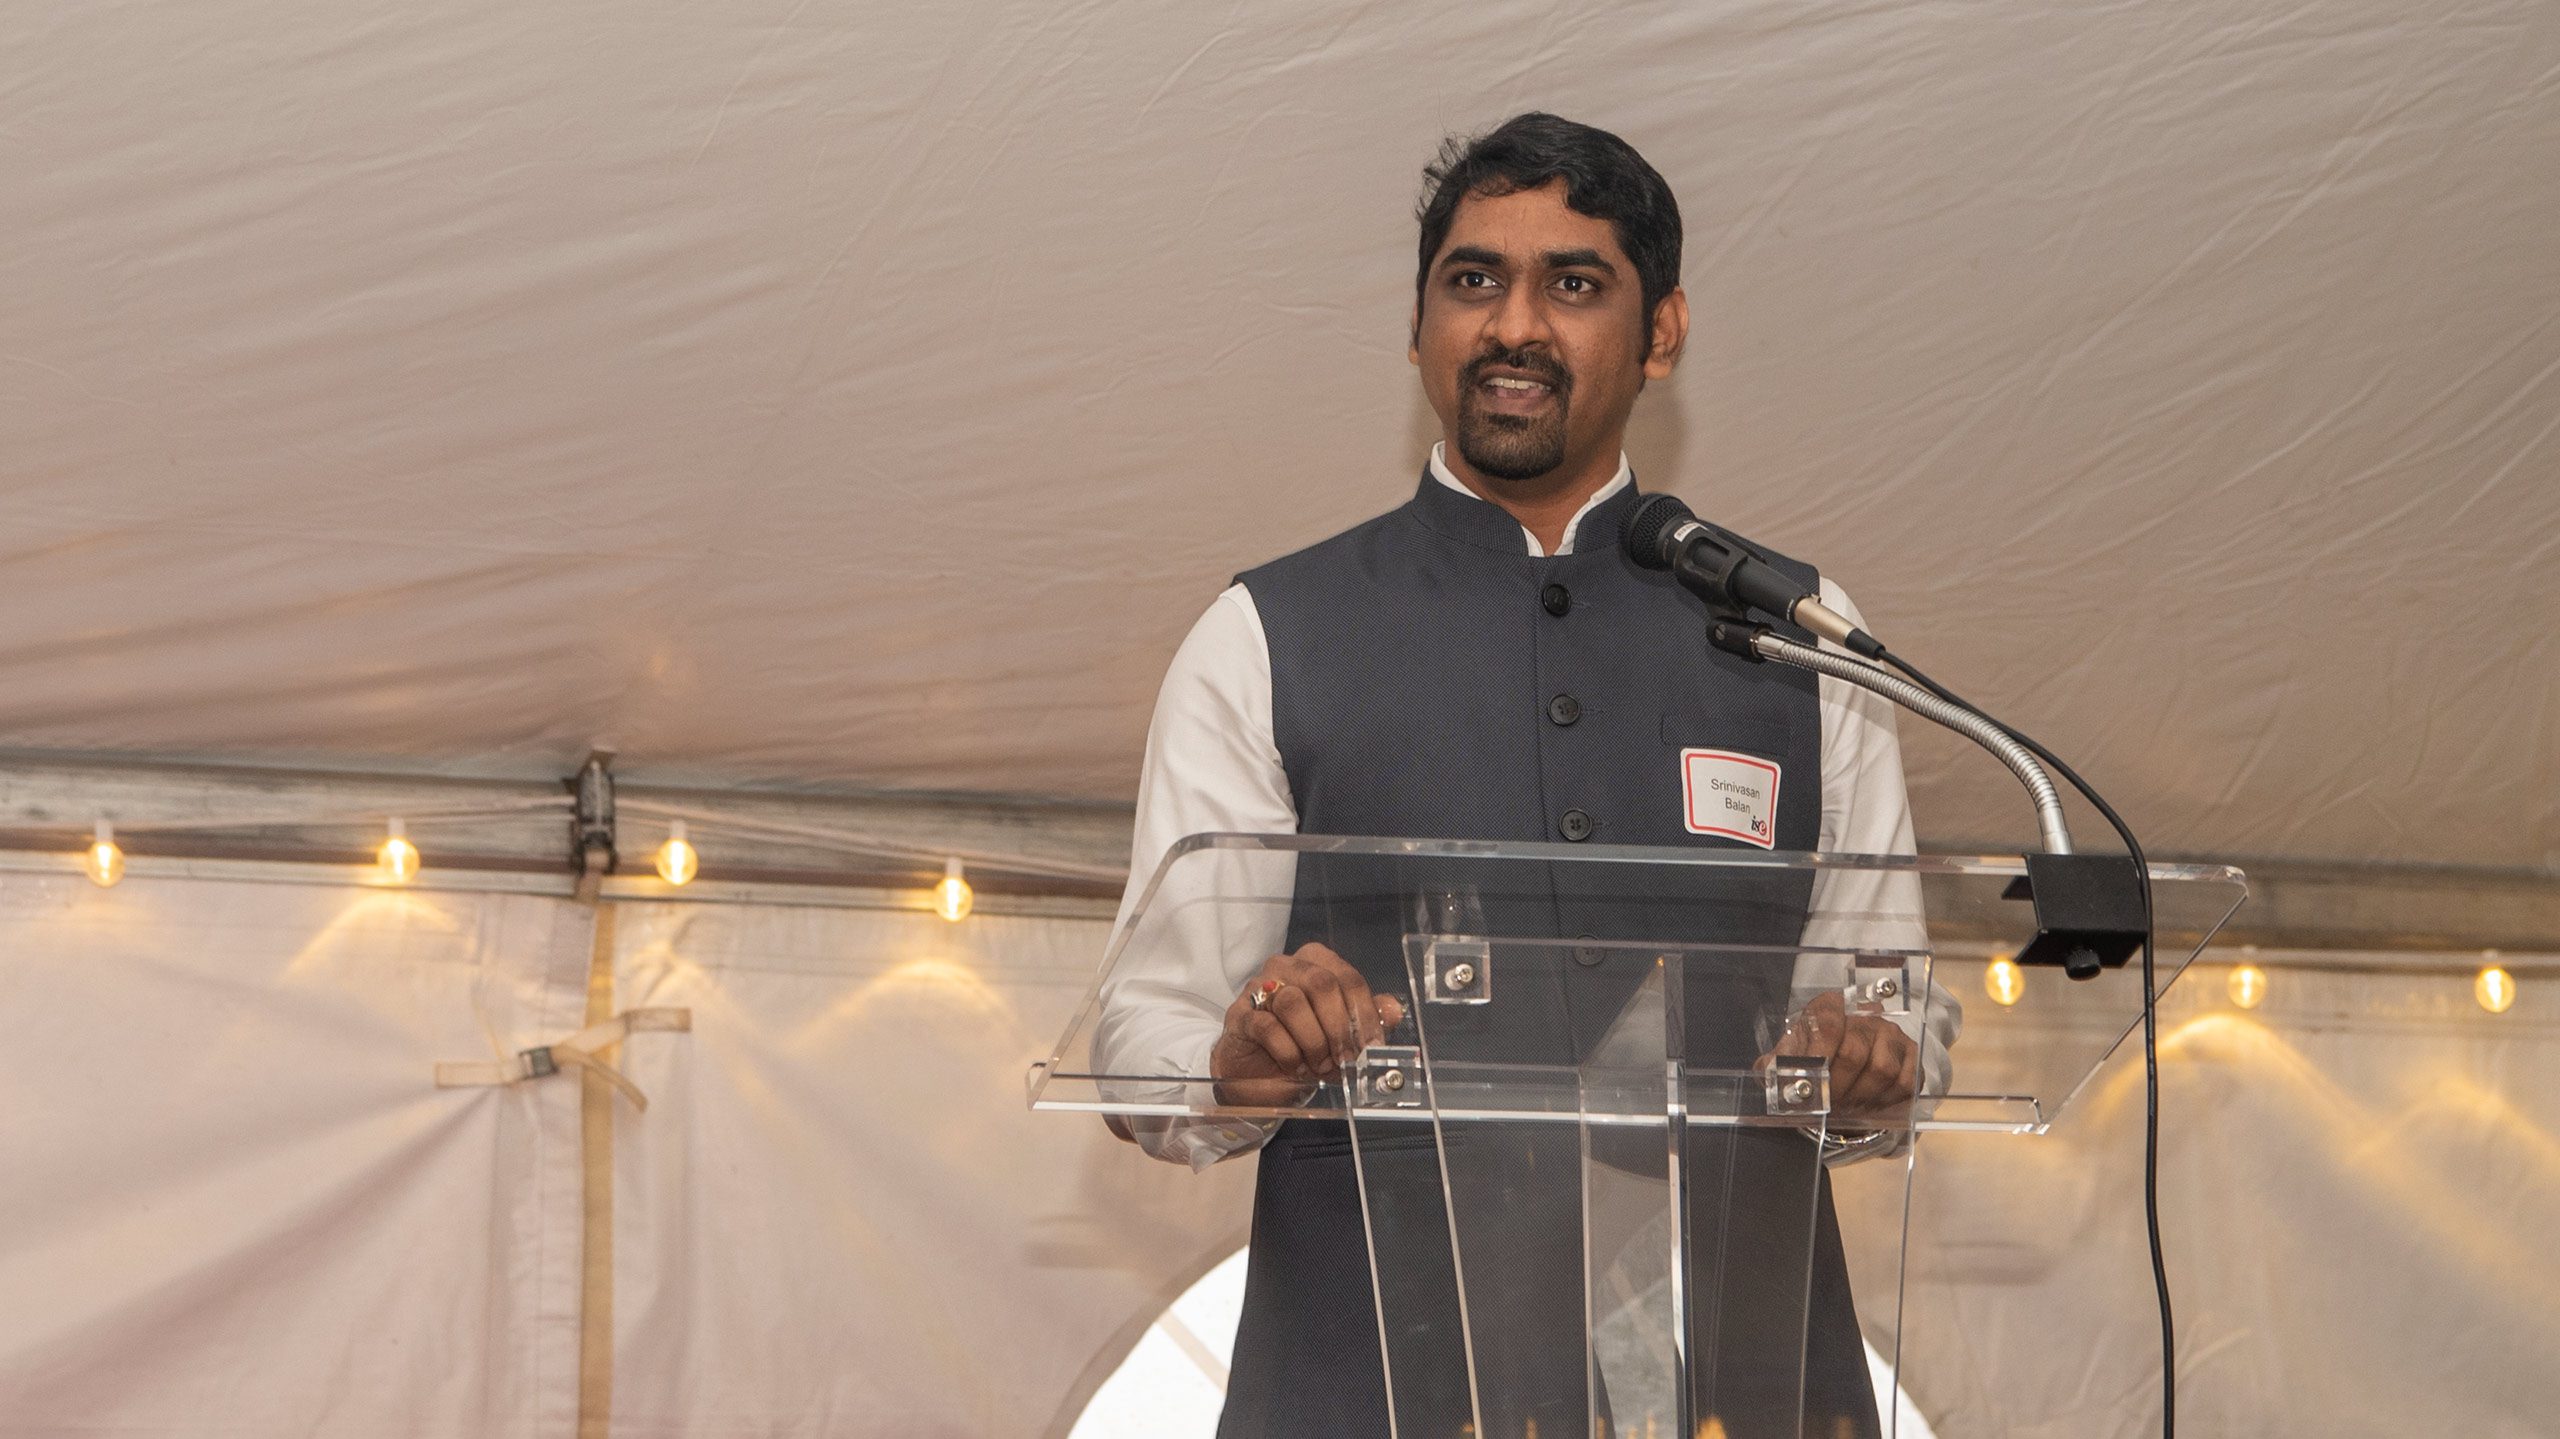 Grad student Srinivasan Balan at the podium during the 2022 C.A. Anderson Awards